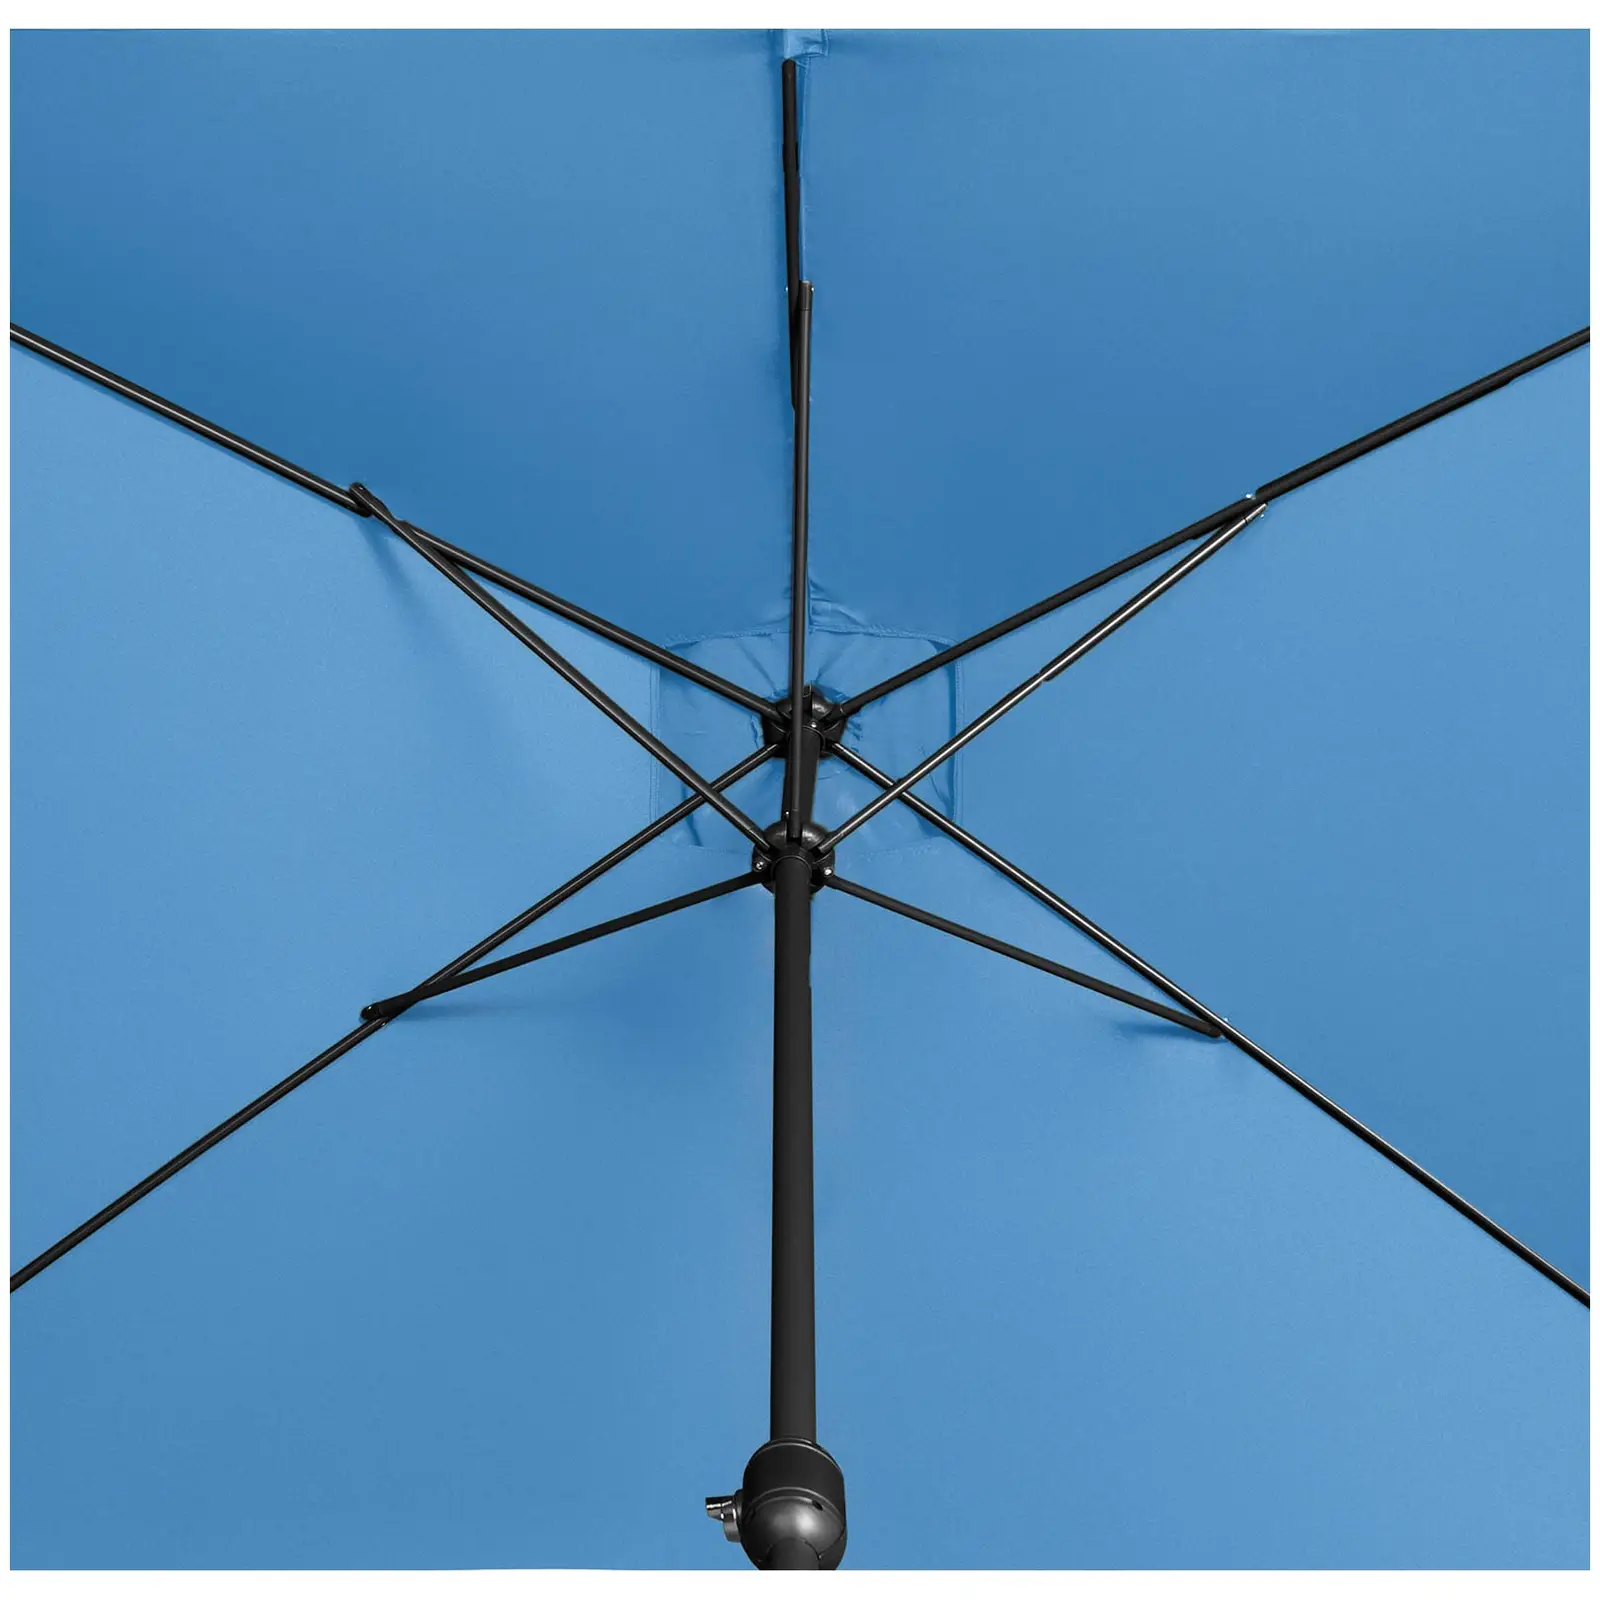 Parasoll stort - blått - rektangulärt - 200 x 300 cm